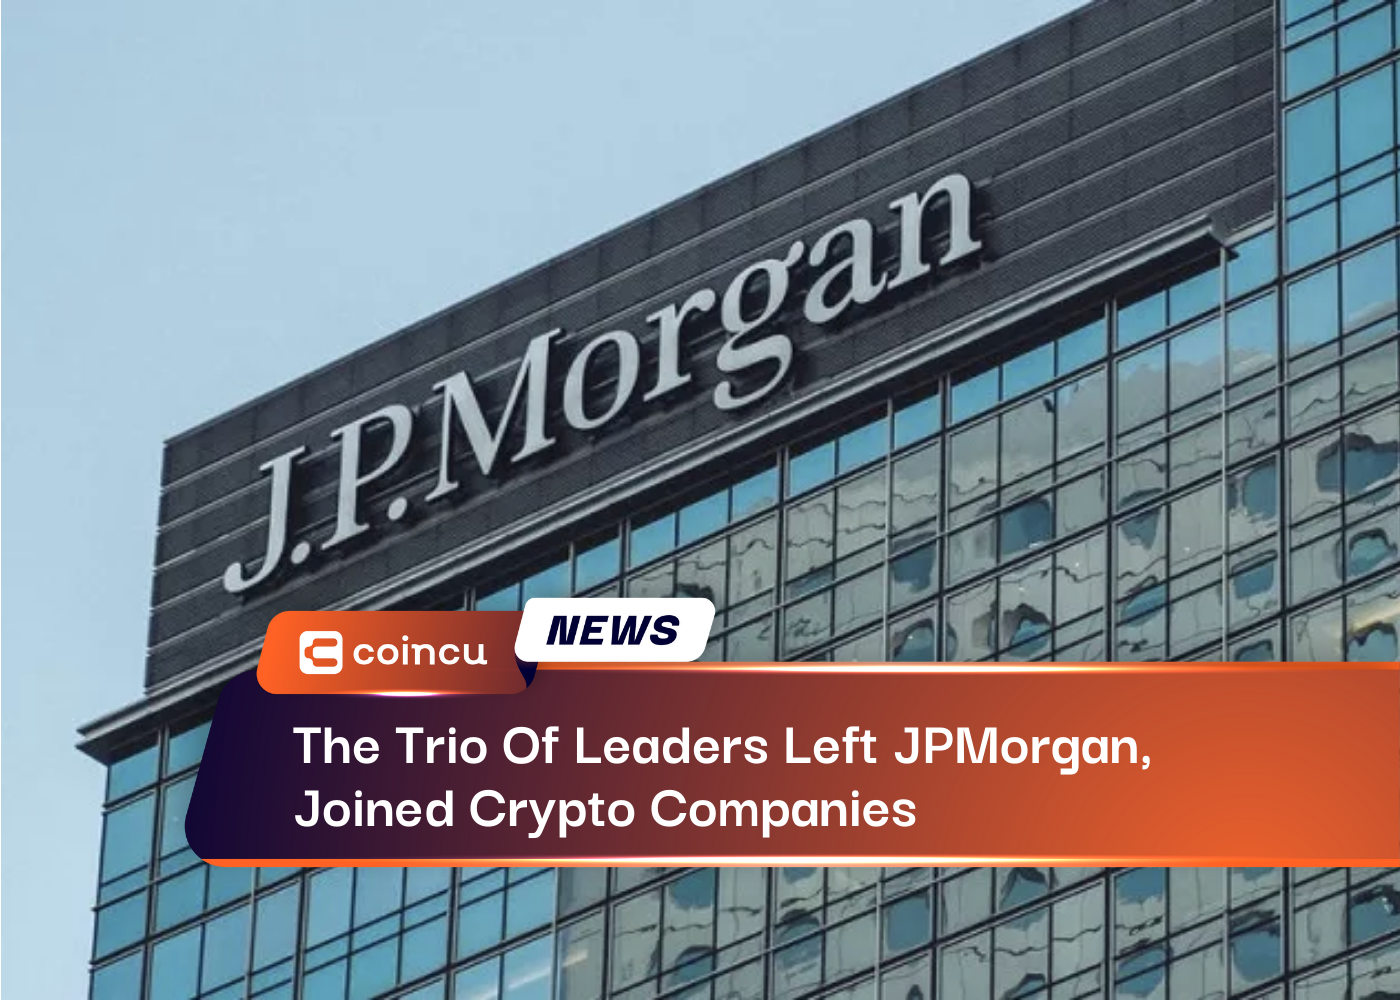 Das Führungstrio verließ JPMorgan und schloss sich Krypto-Unternehmen an